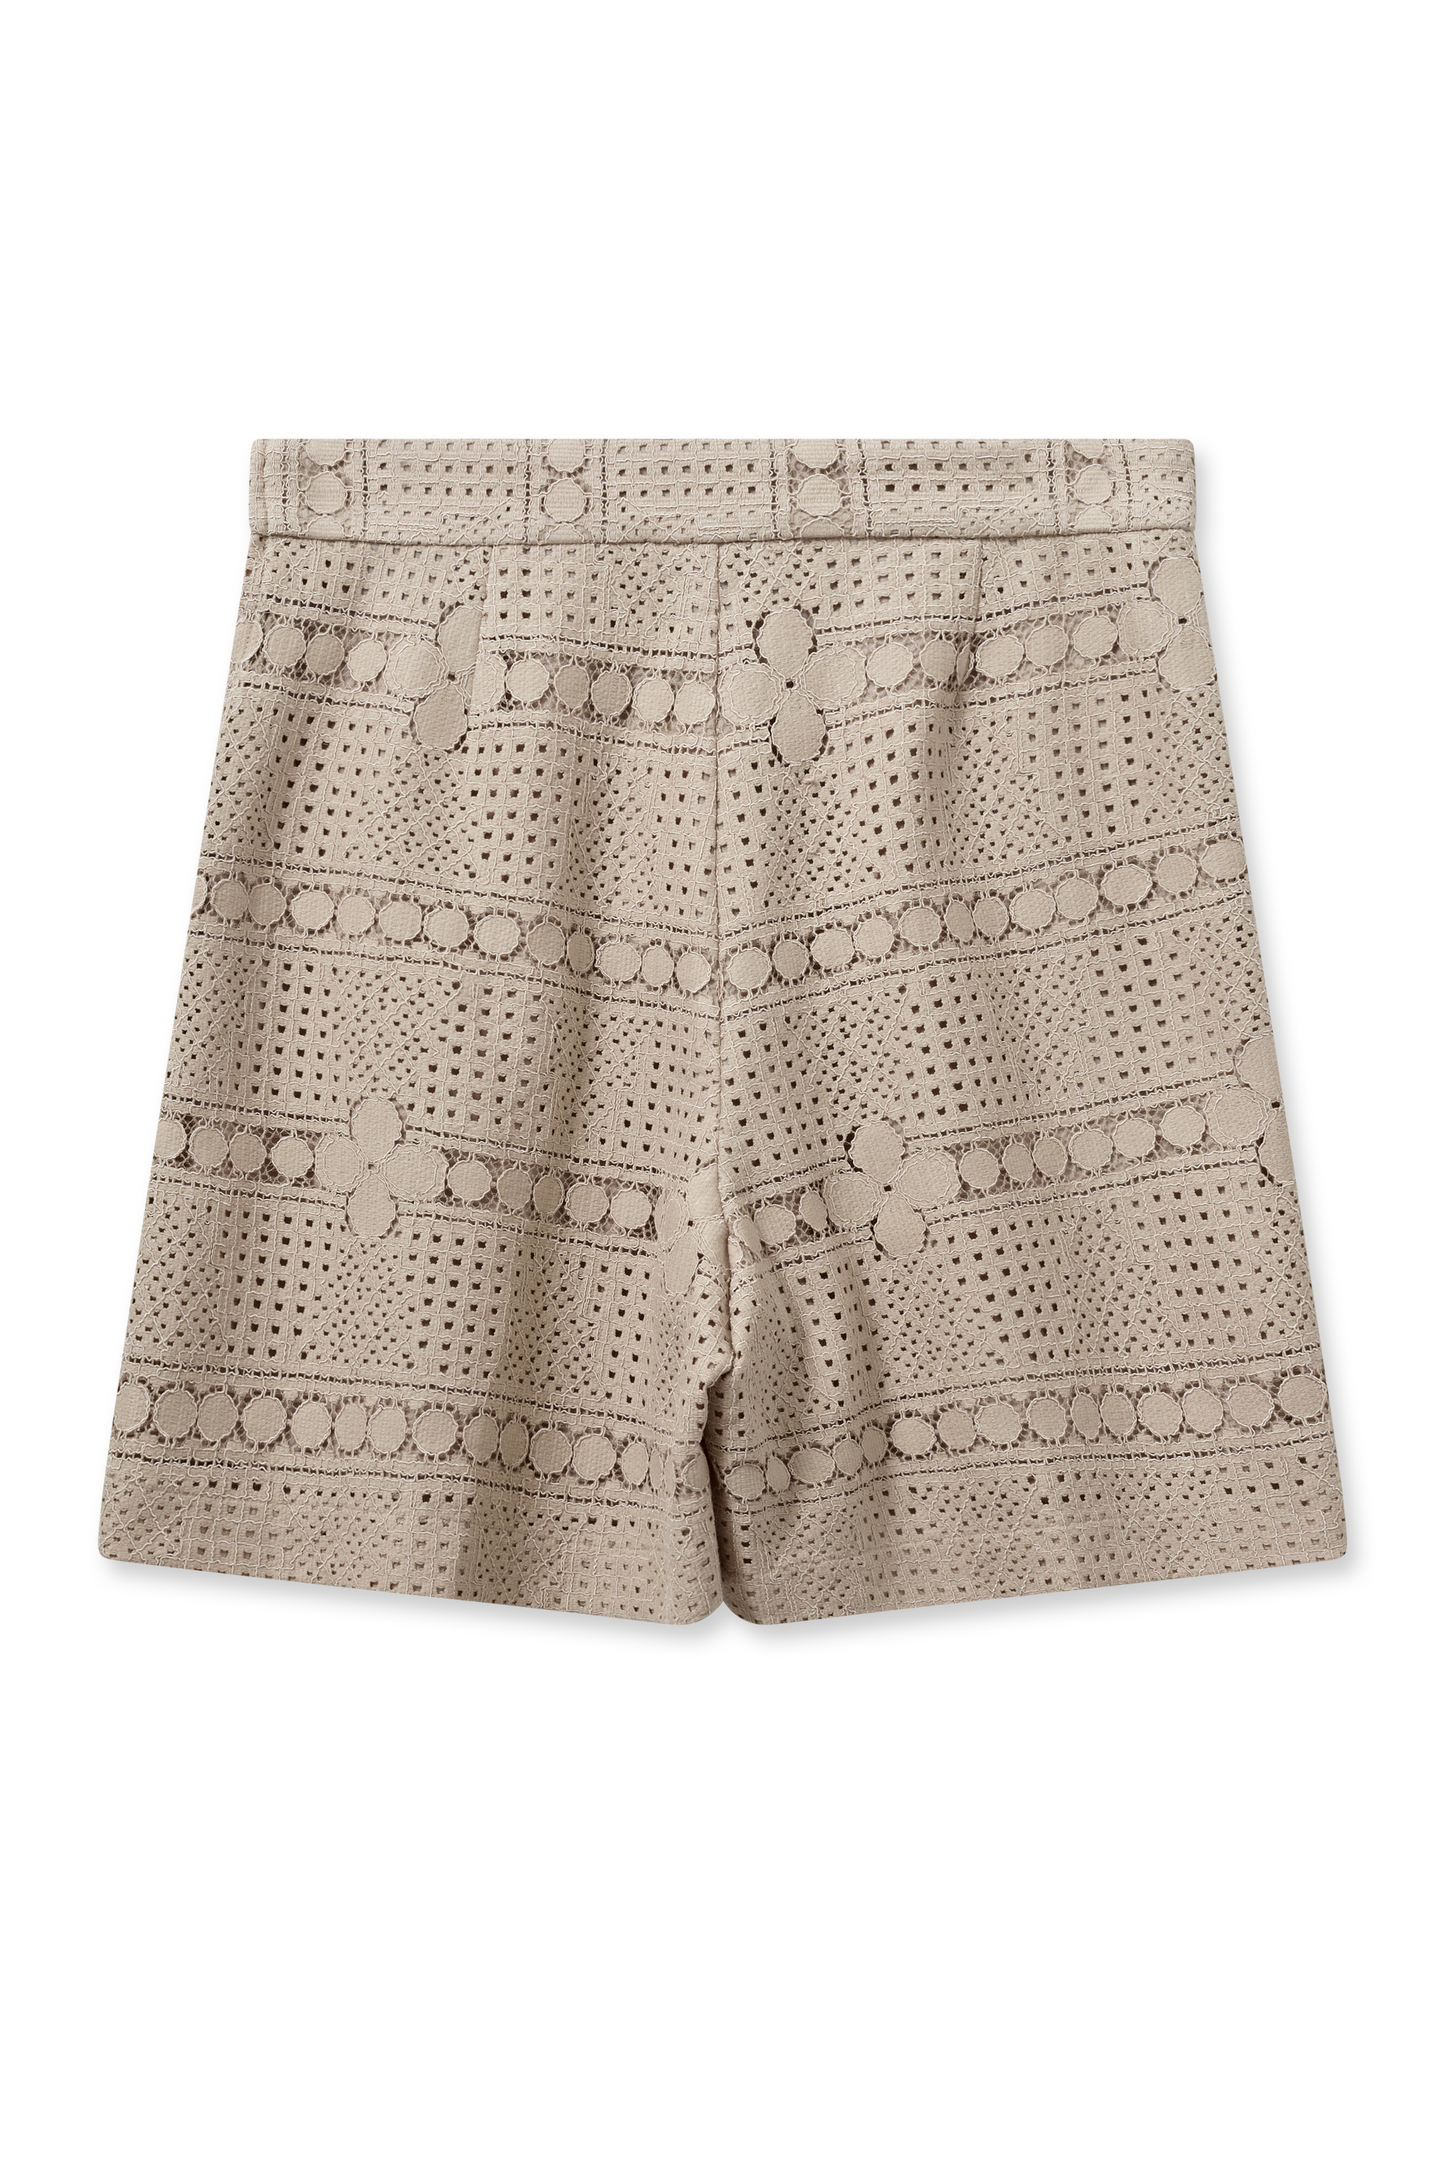 Mos Mosh - Veia Ellinor Shorts in Lace